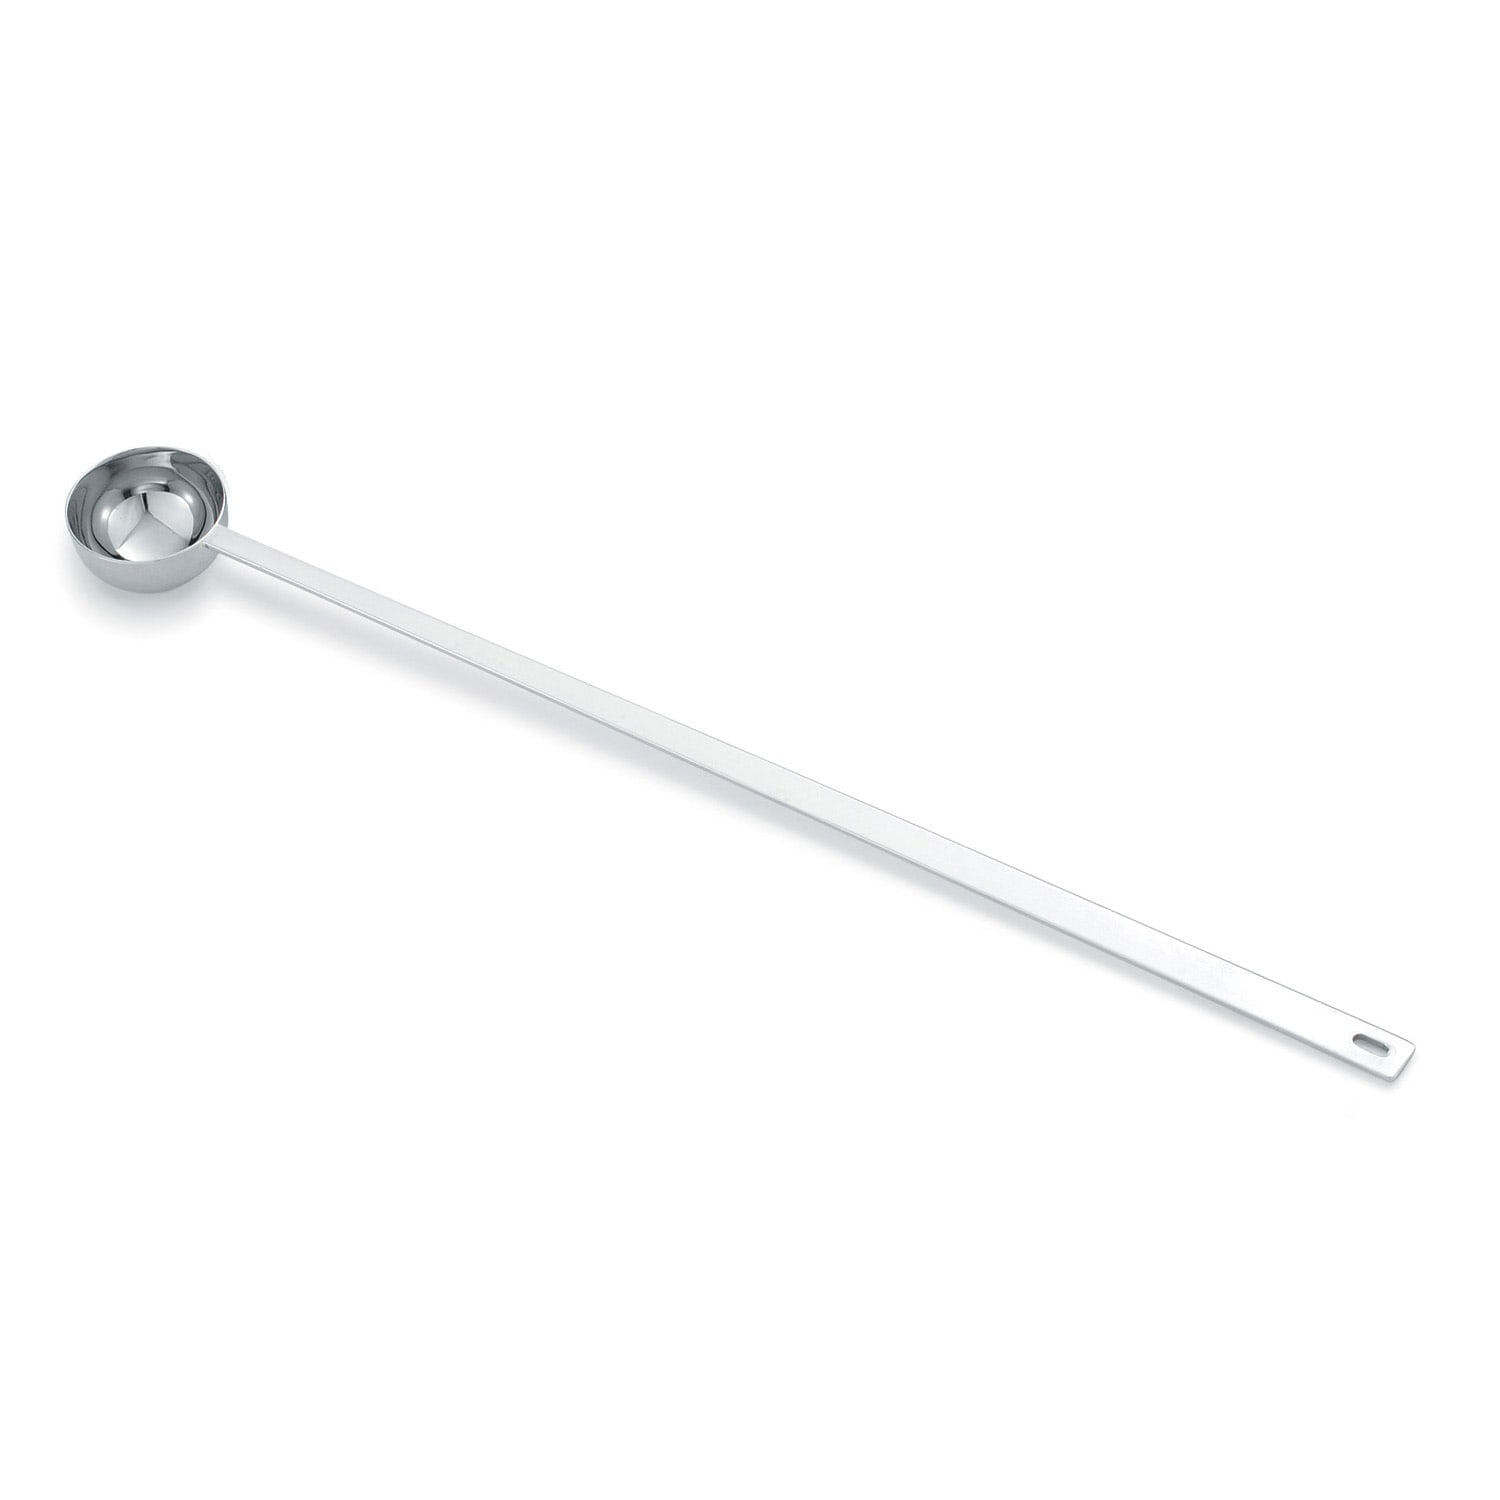 Plastic Measuring Scoop, Long Handle, 1/2 Teaspoon (2.5 mL - 2.5 CC) 5 Pack